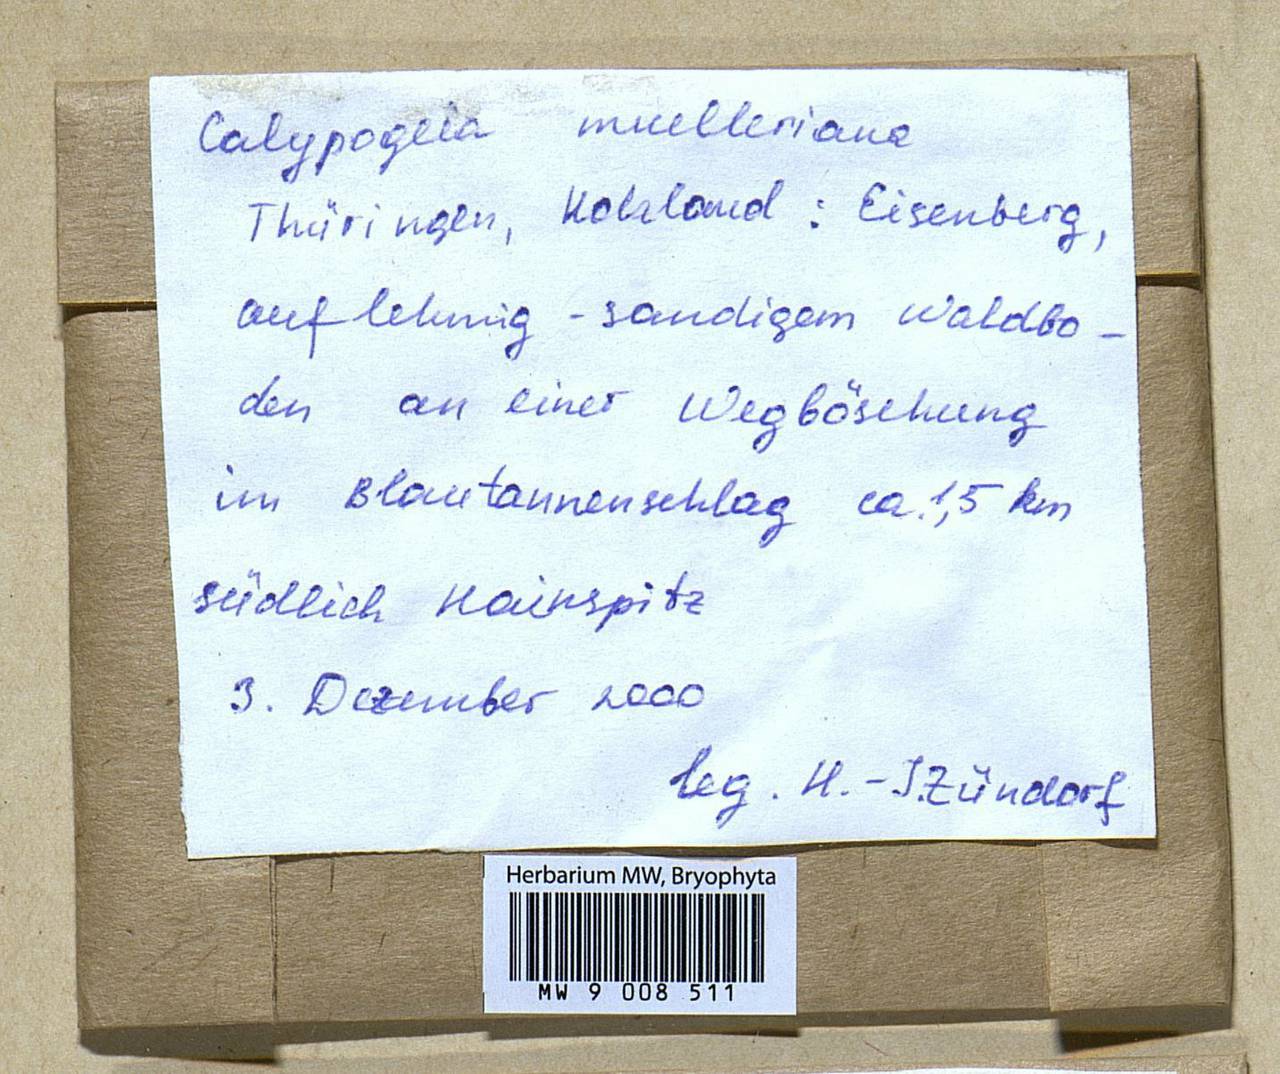 Calypogeia muelleriana (Schiffn.) Müll. Frib., Гербарий мохообразных, Мхи - Западная Европа (BEu) (Германия)